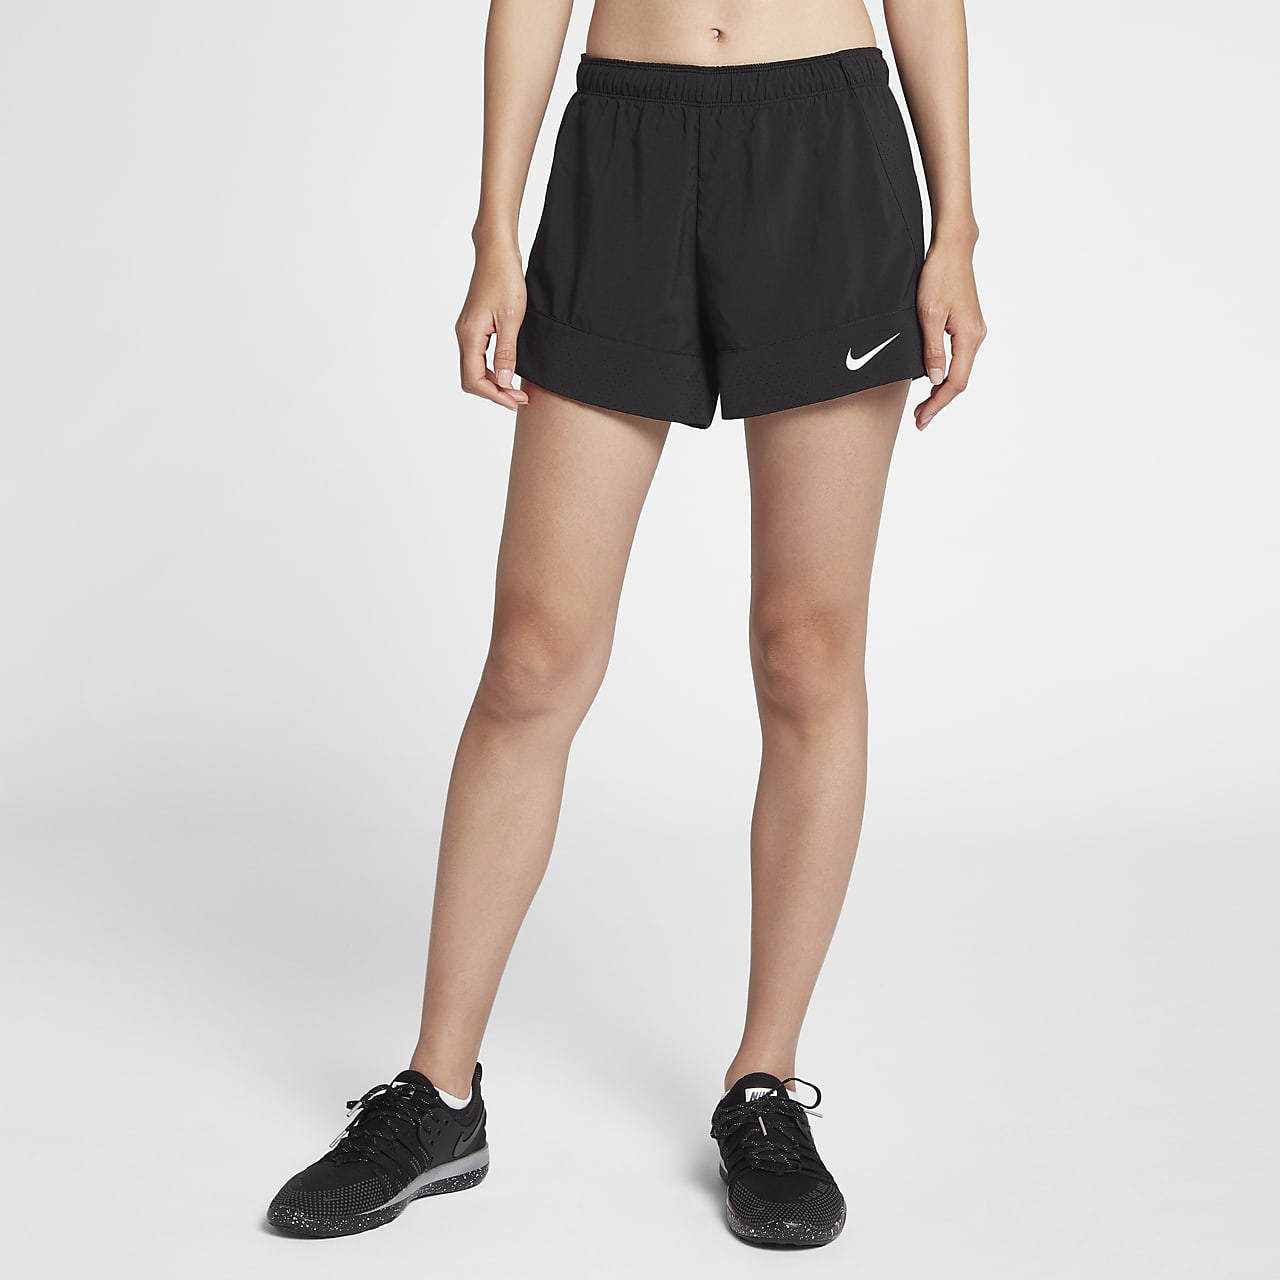 nike flex training shorts womens